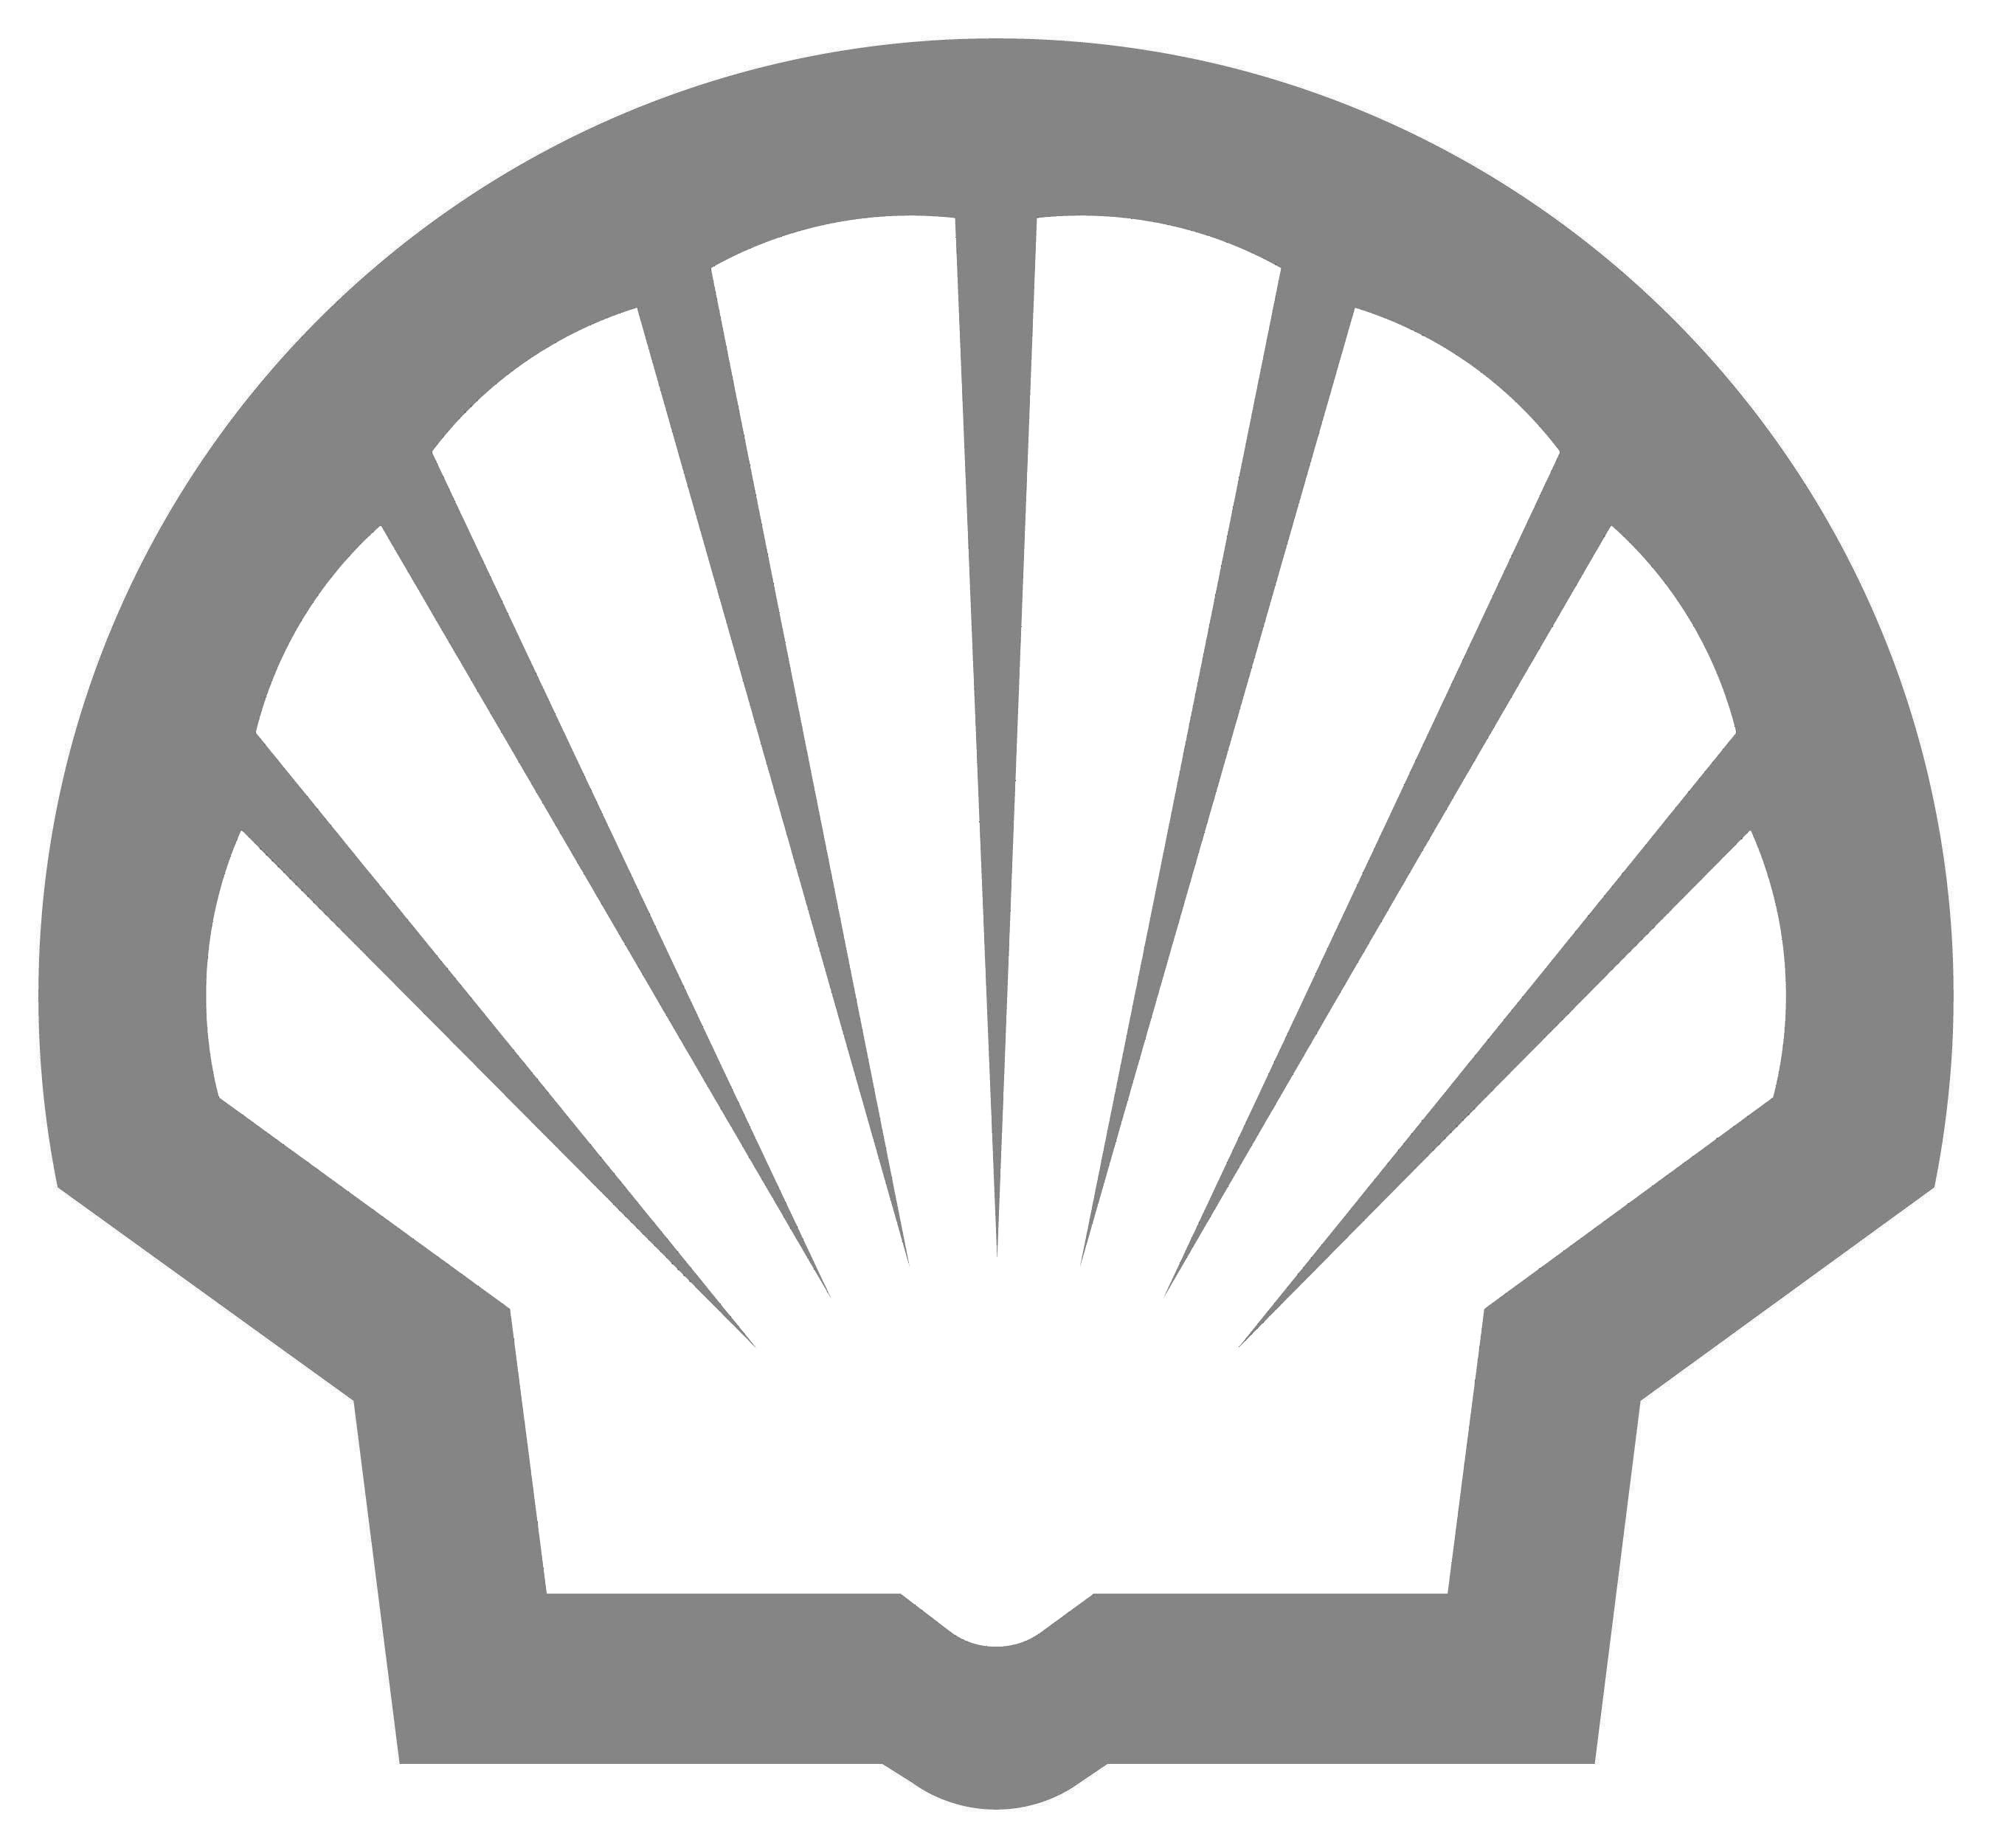 Shell Oil Company Logo - SHELL OIL COMPANY LOGO - Construx